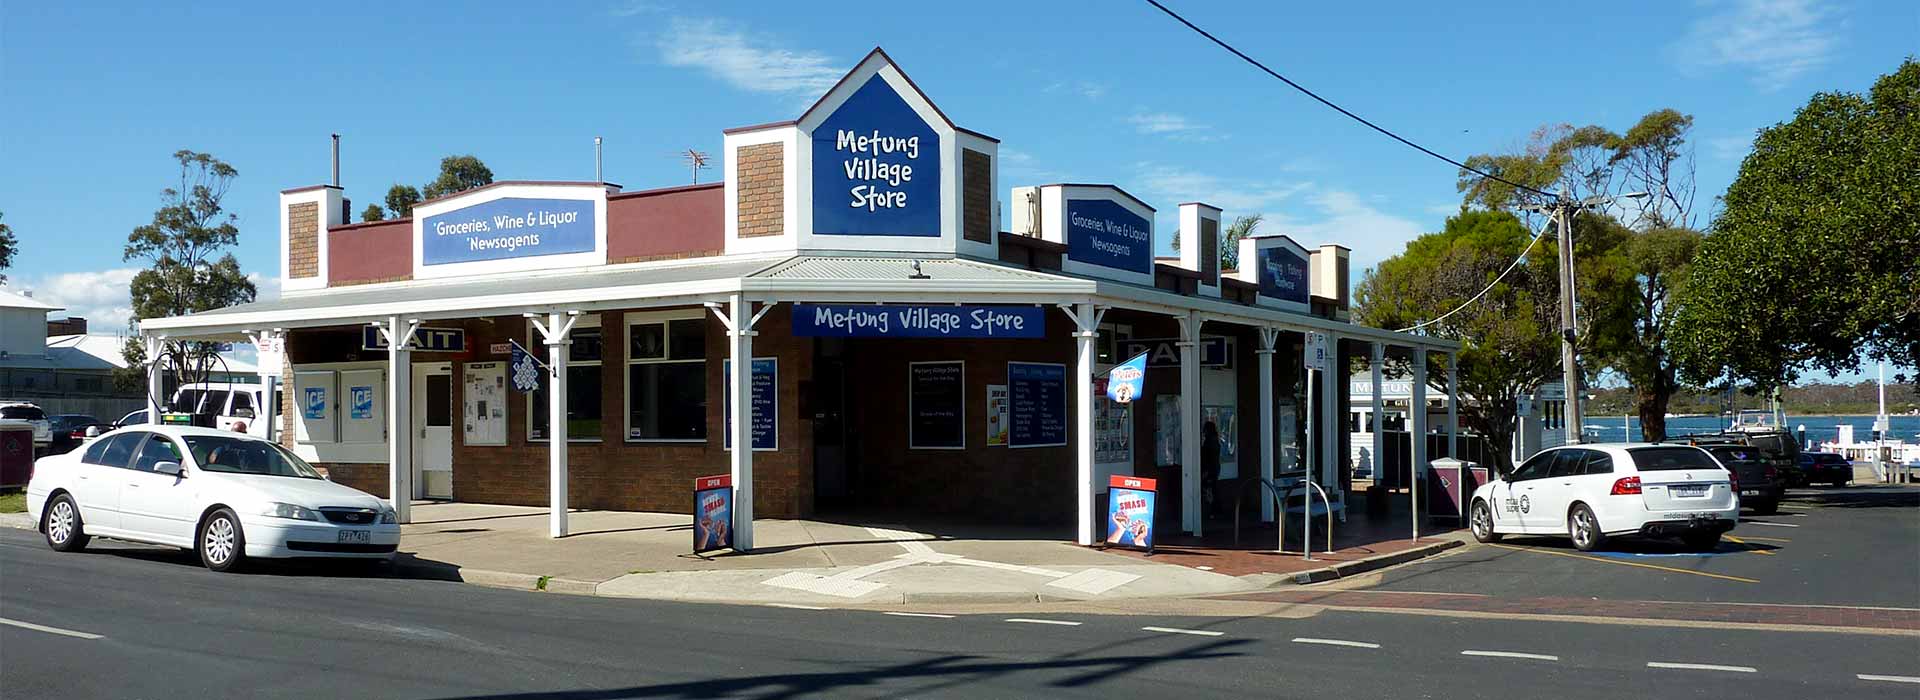 Metung Village Store, 62 Metung Road, Metung, Victoria